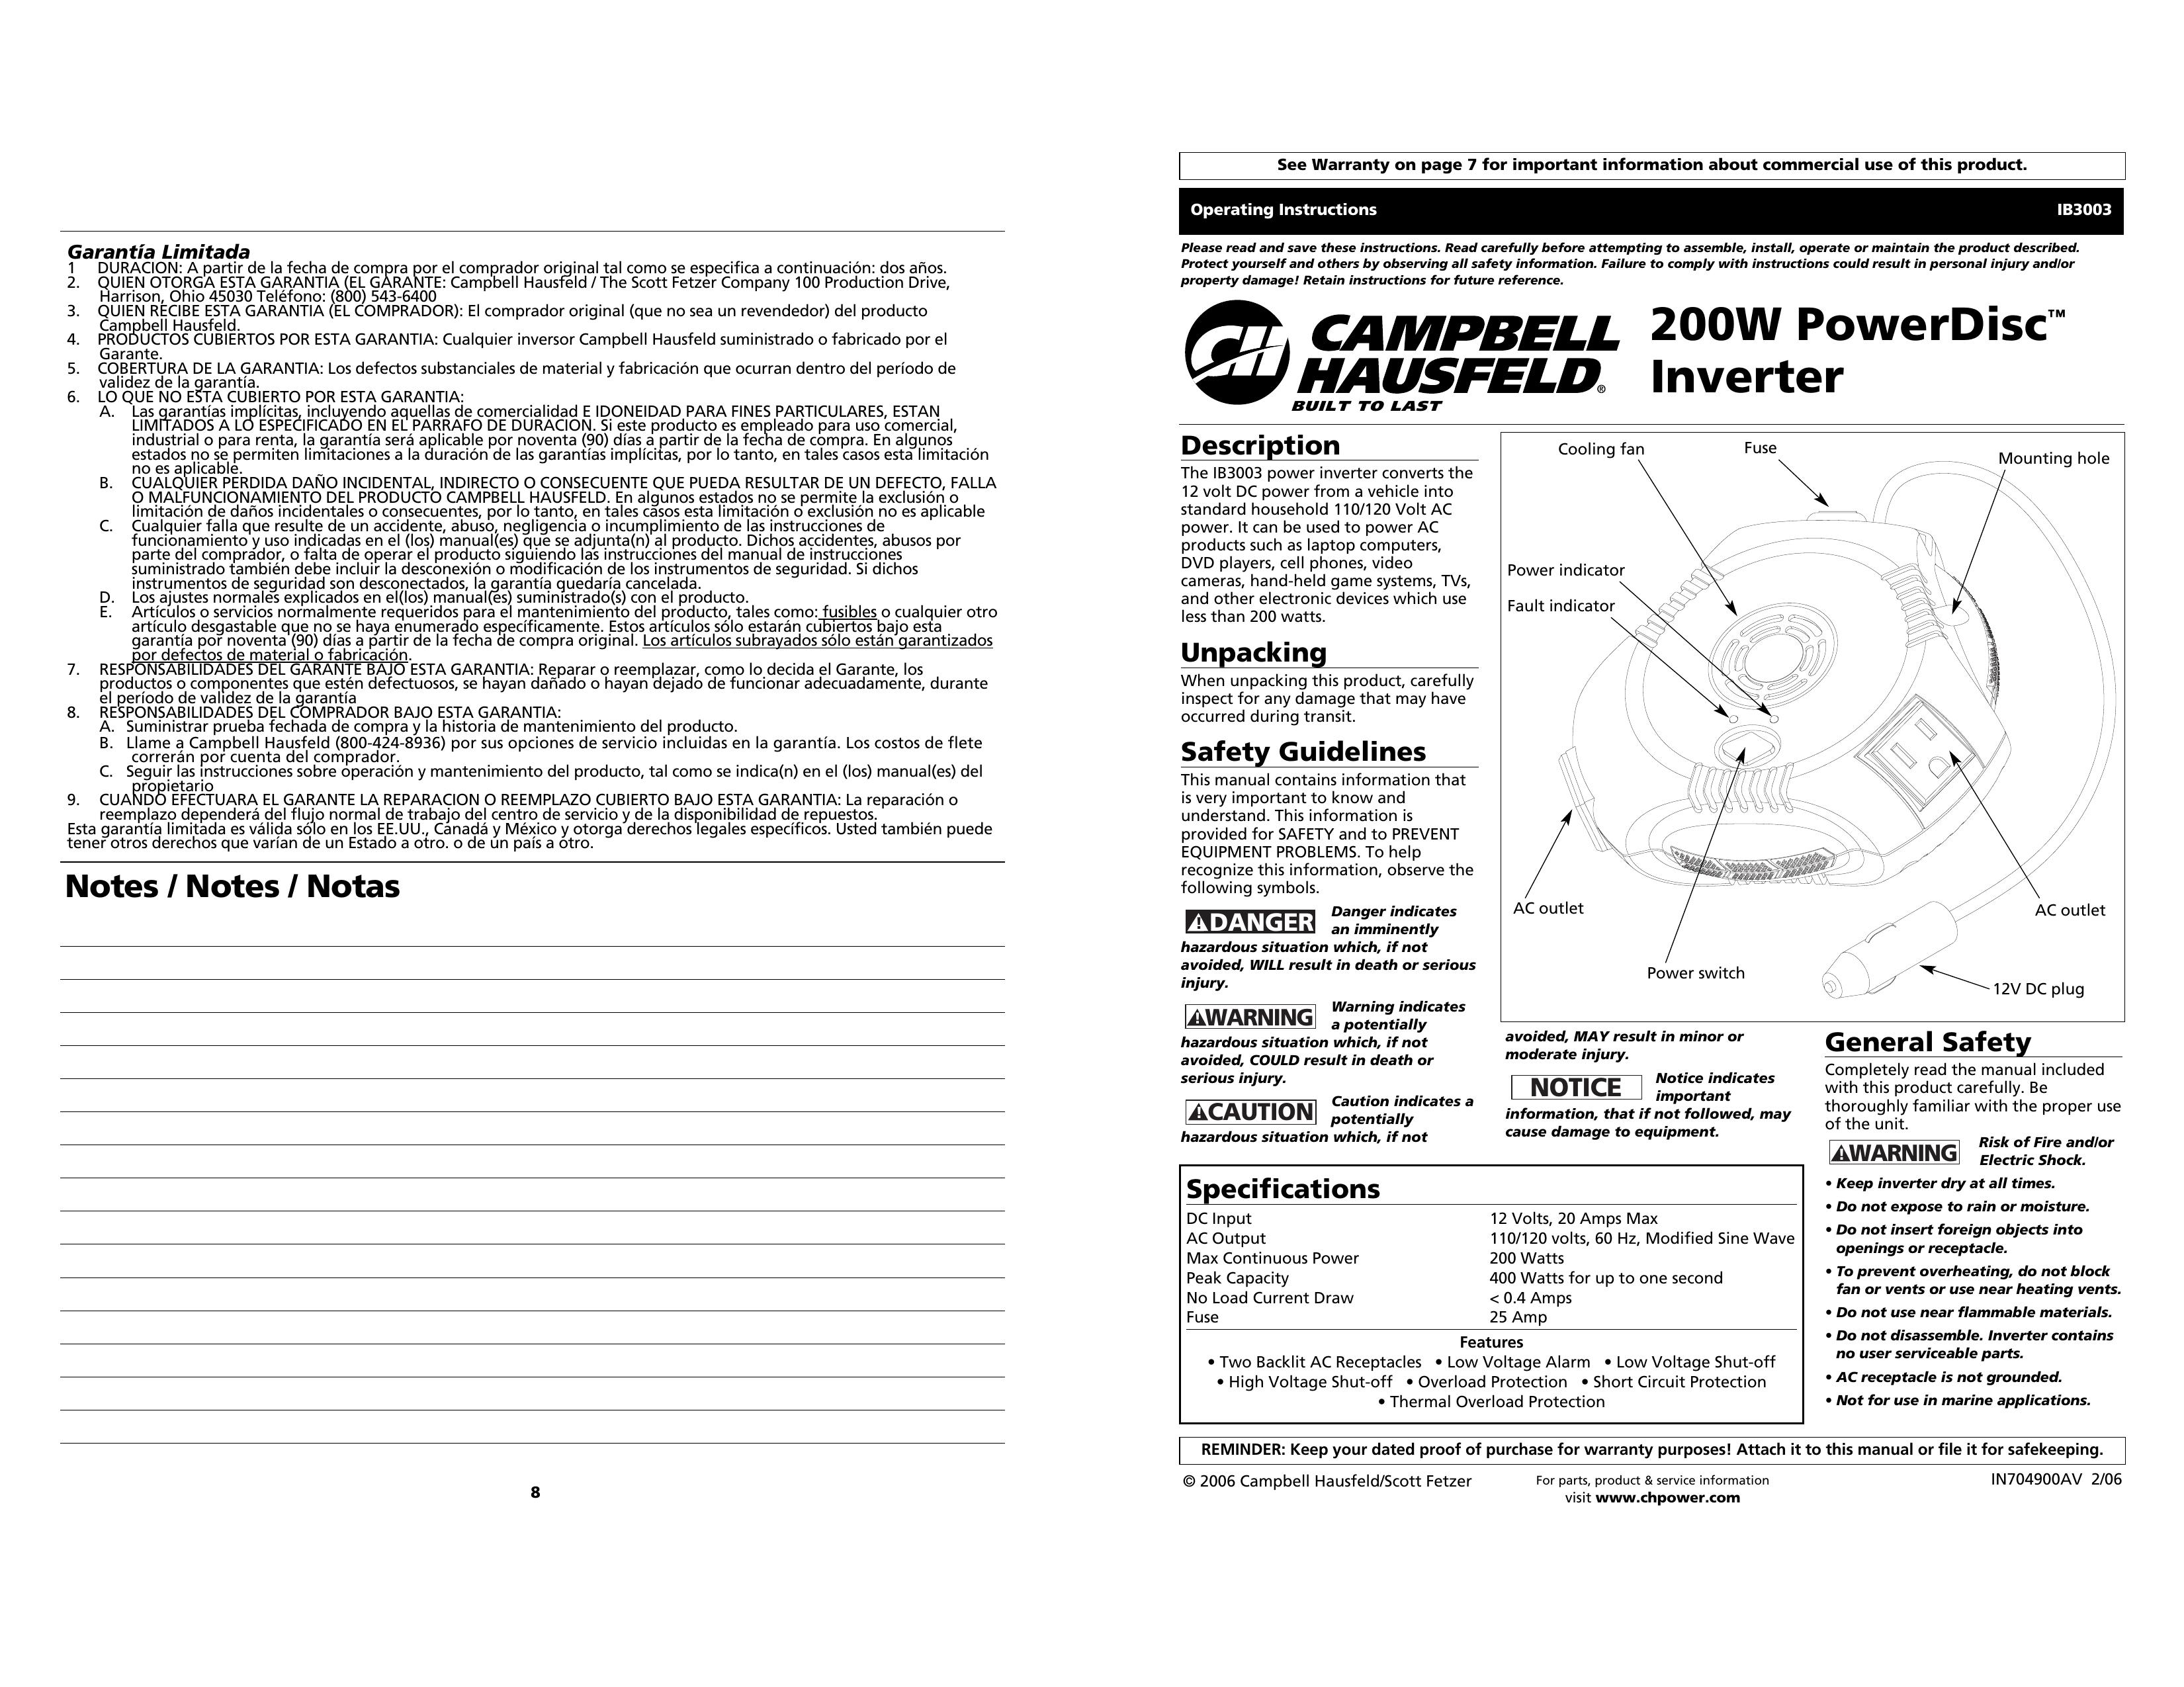 Campbell Hausfeld IB3003 Marine Battery User Manual